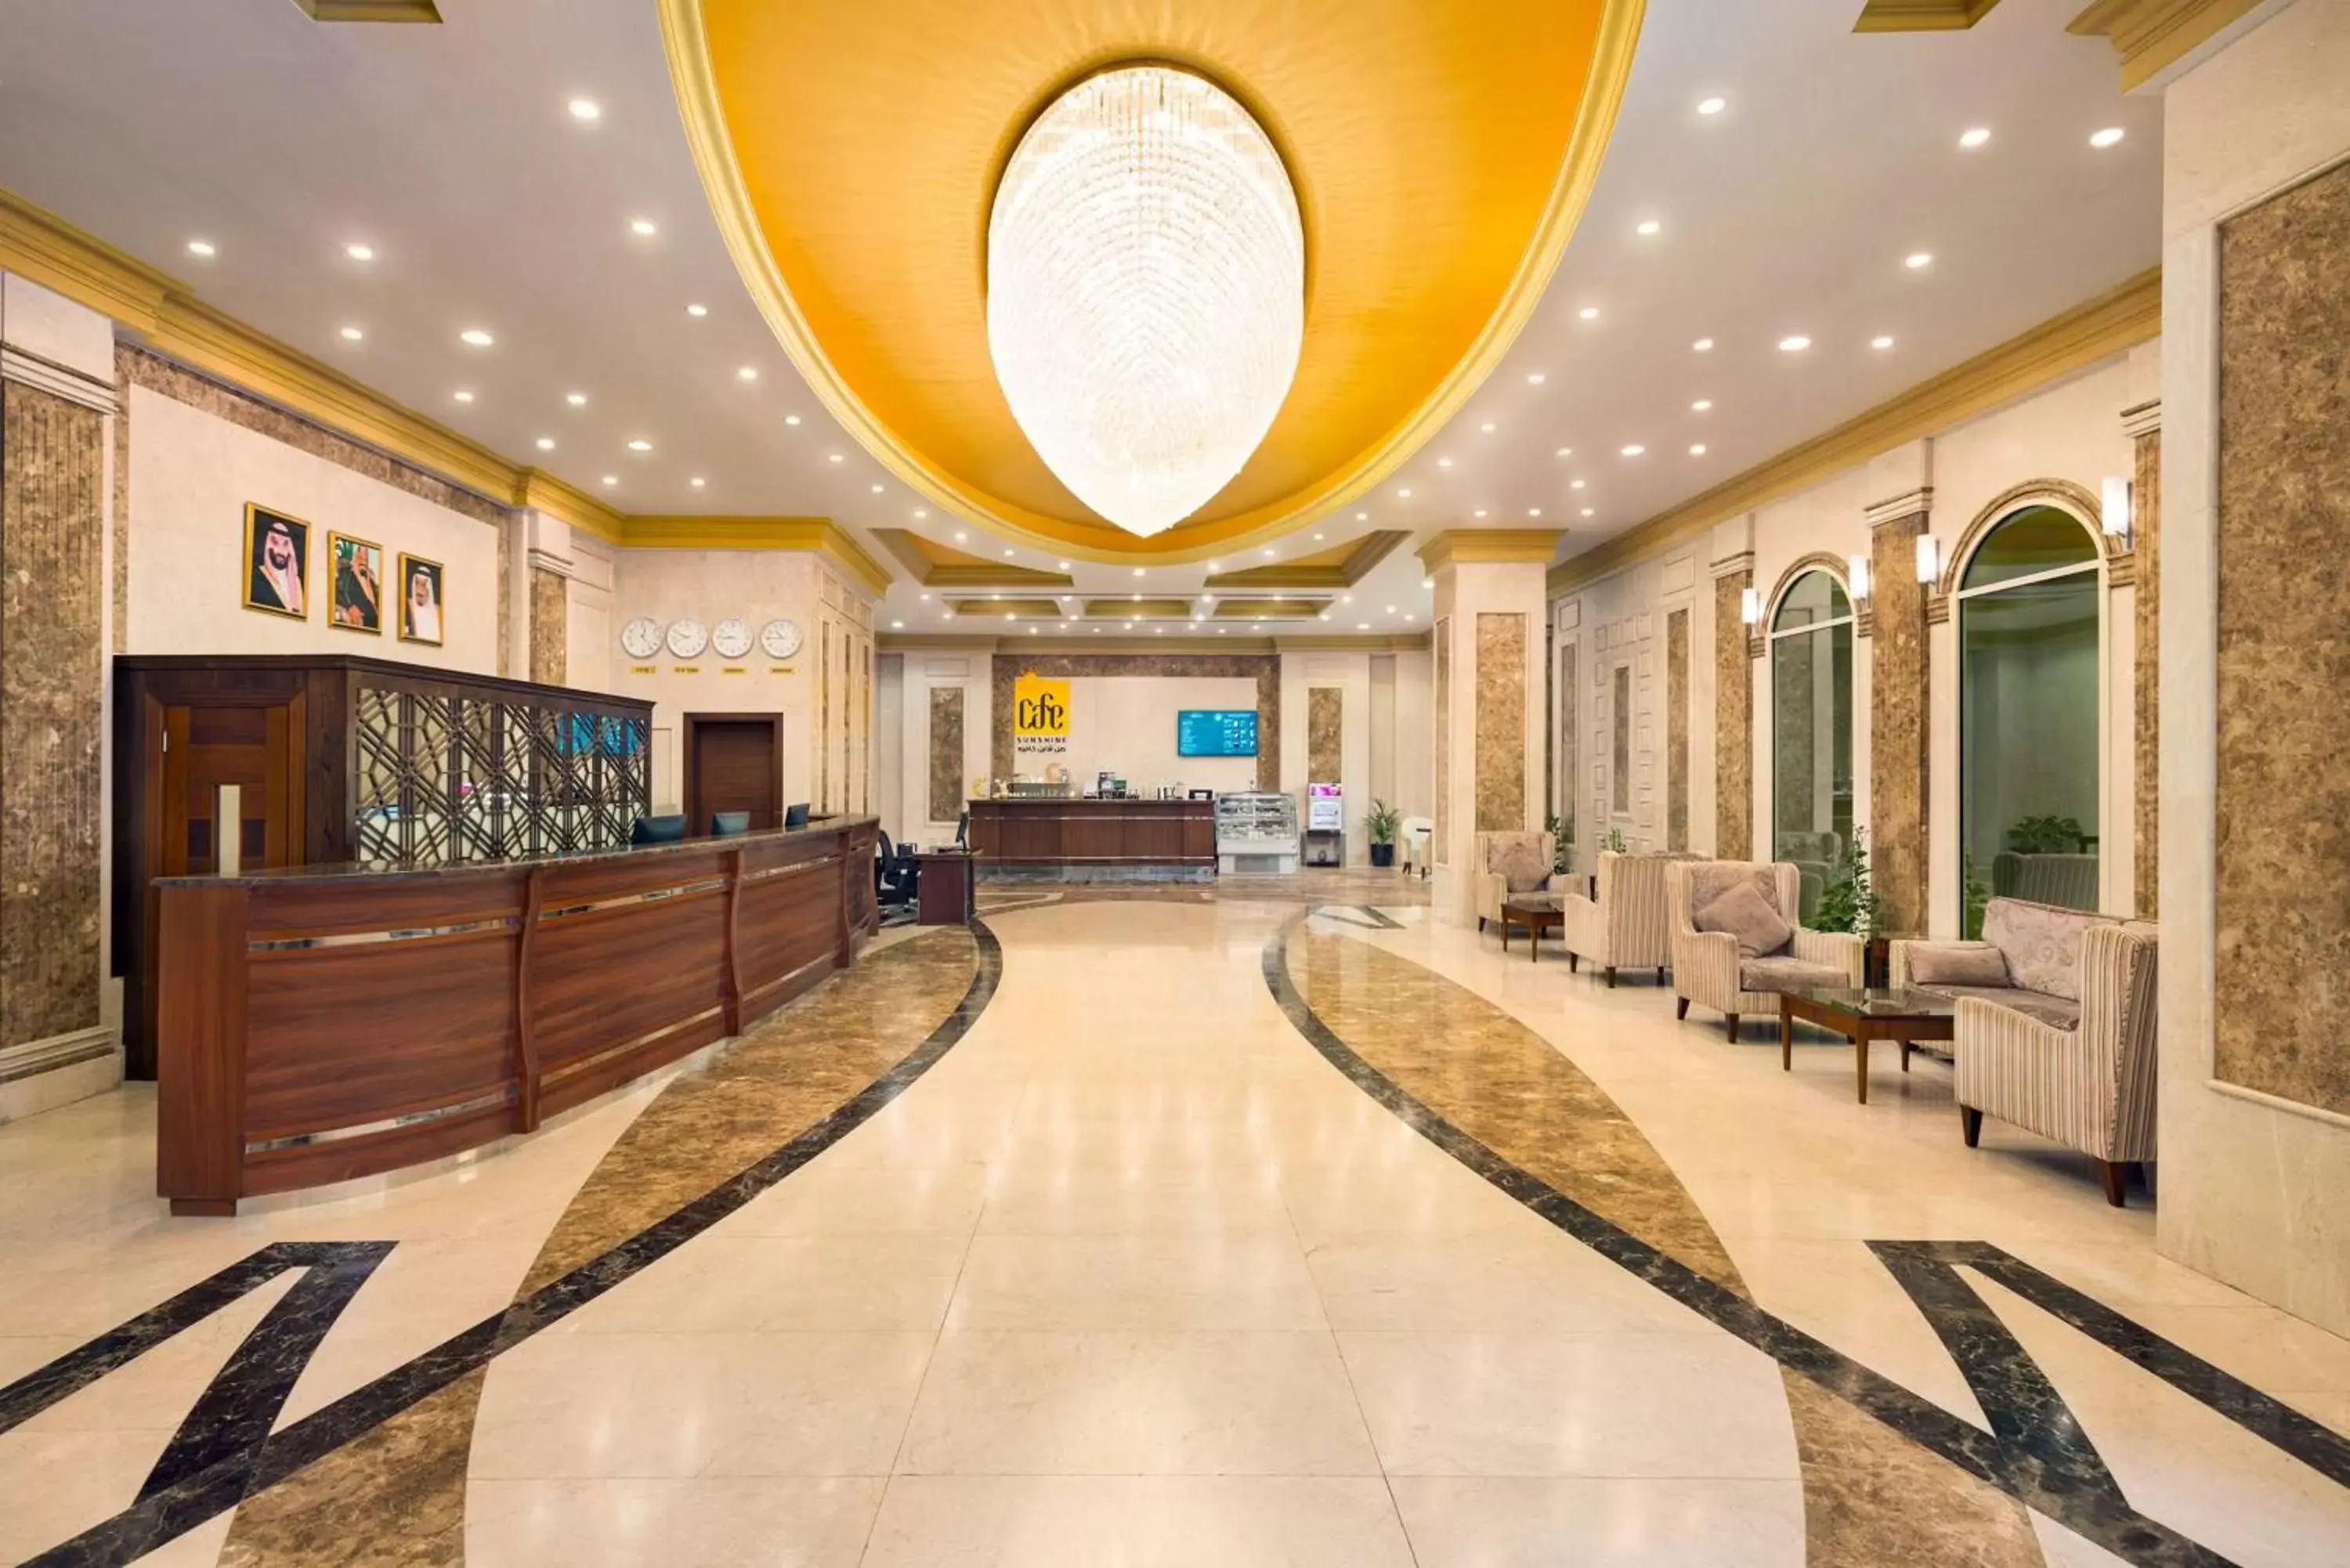 Lobby or reception, Lobby/Reception in Wyndham Garden Dammam